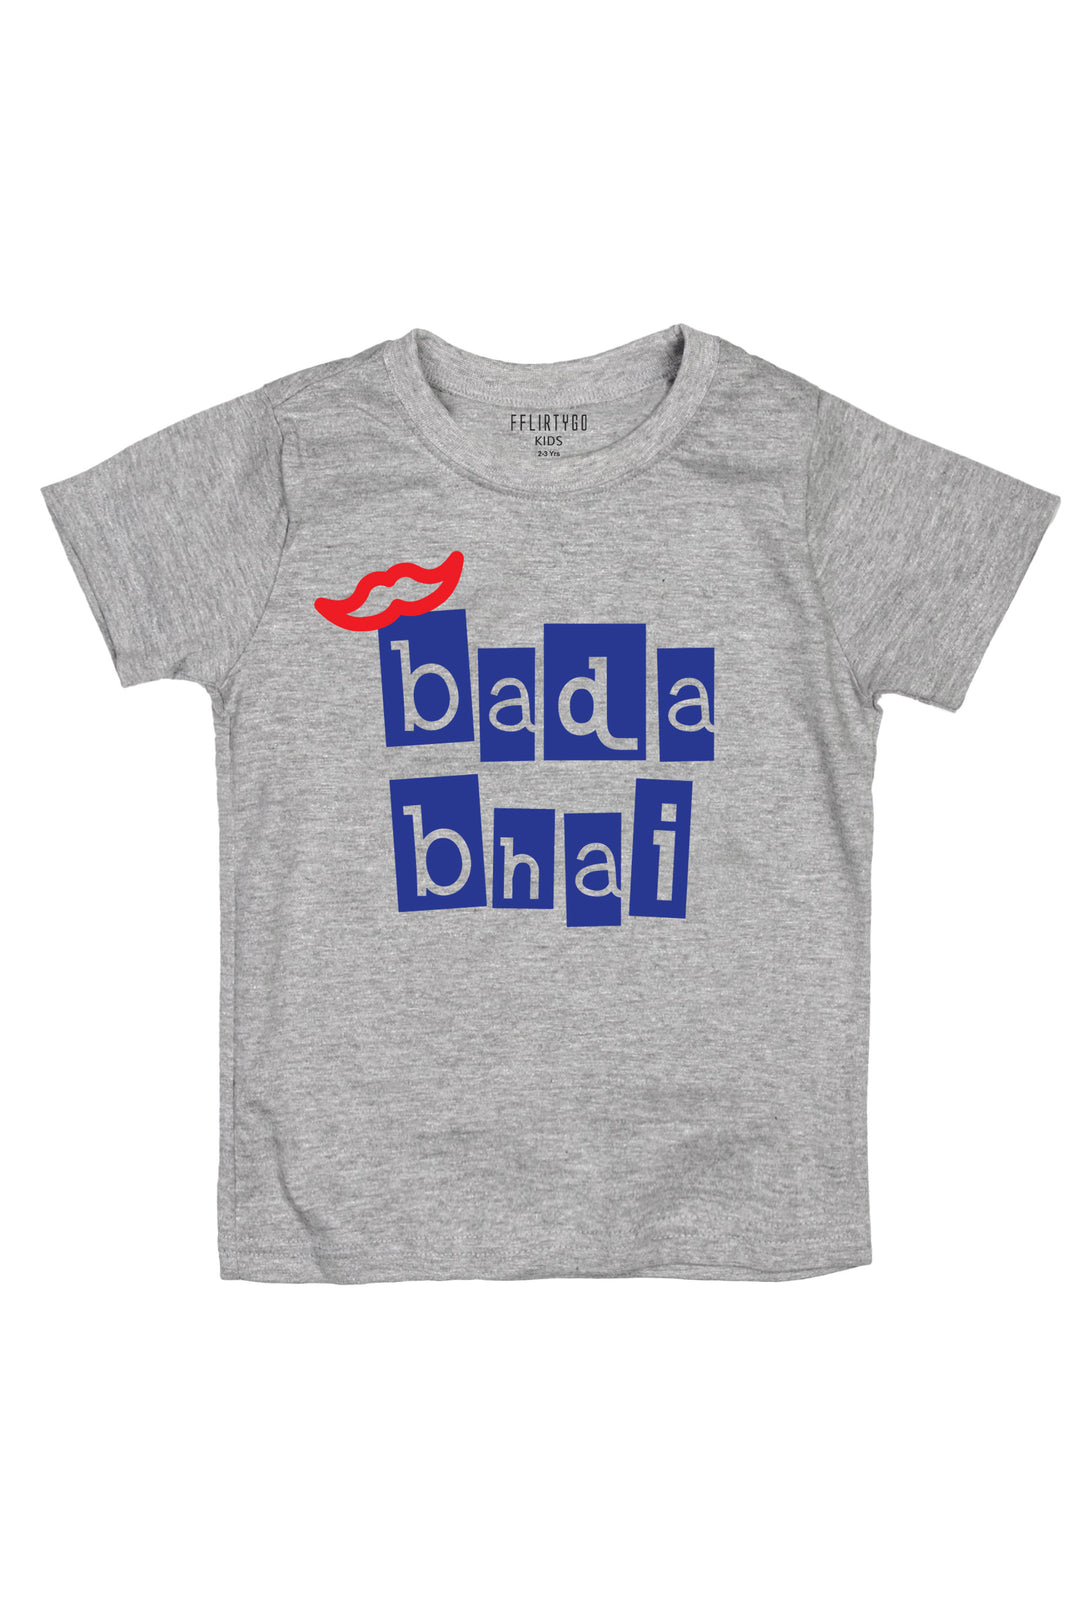 Bada Bhai